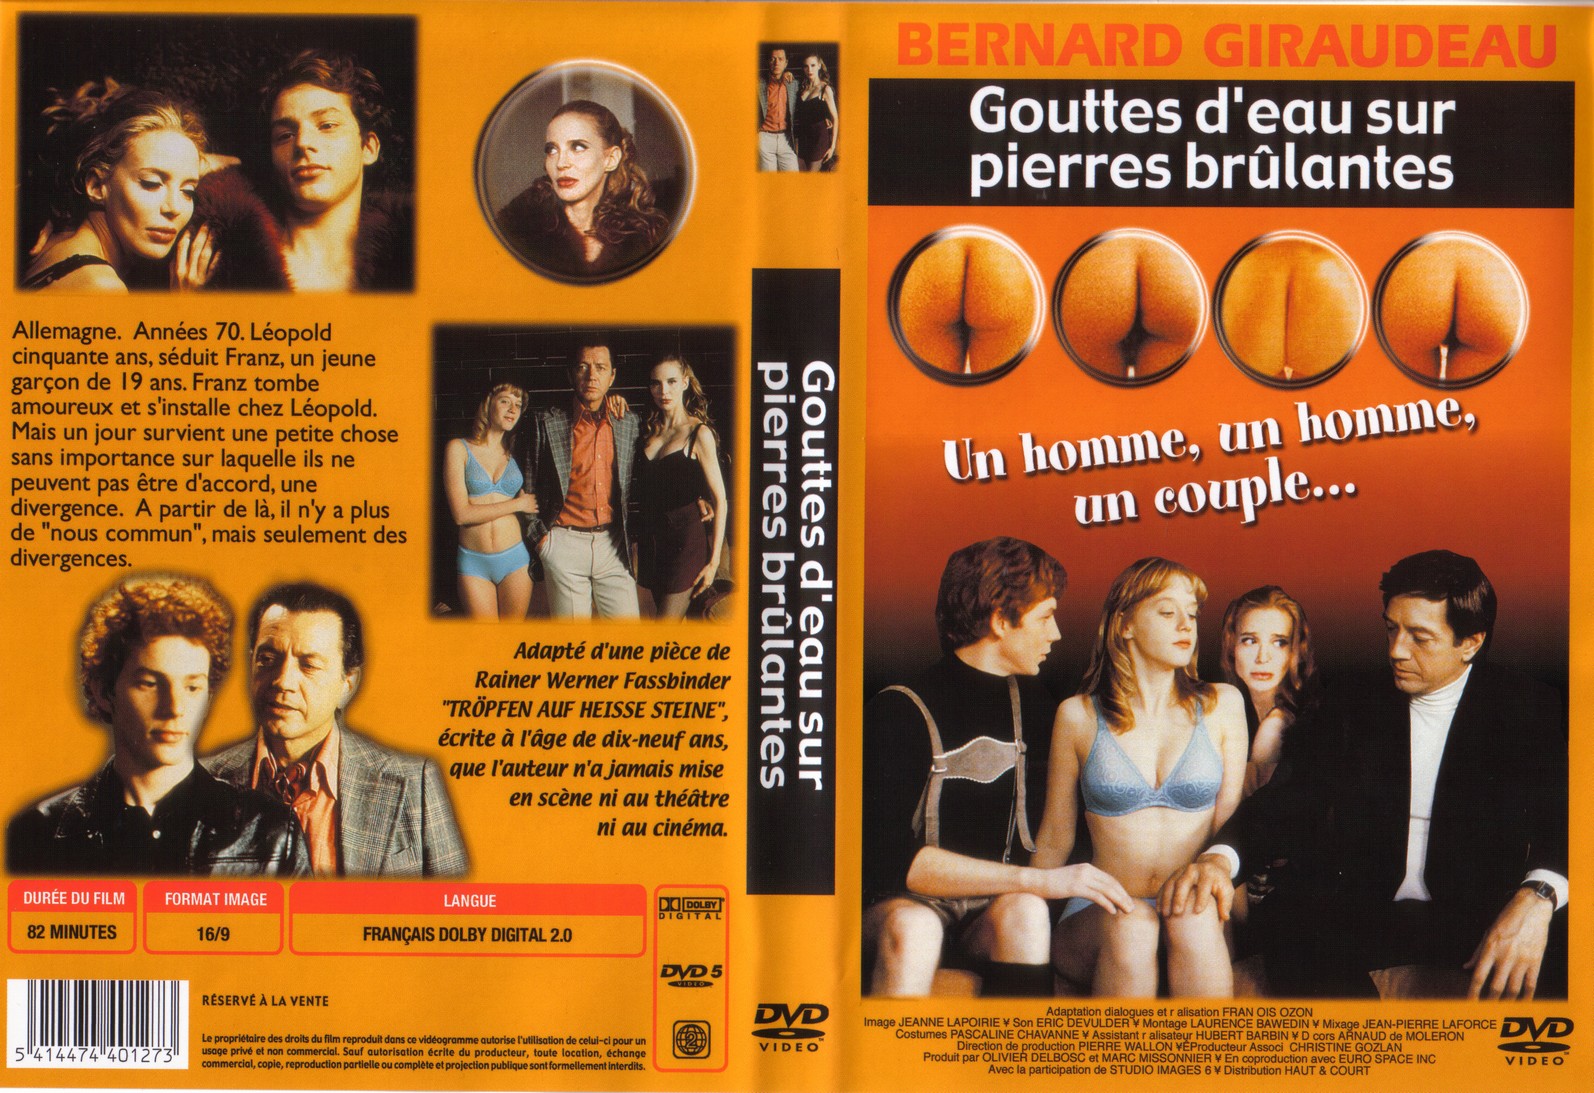 Jaquette Dvd De Gouttes Deau Sur Pierres Brulantes Cinéma Passion